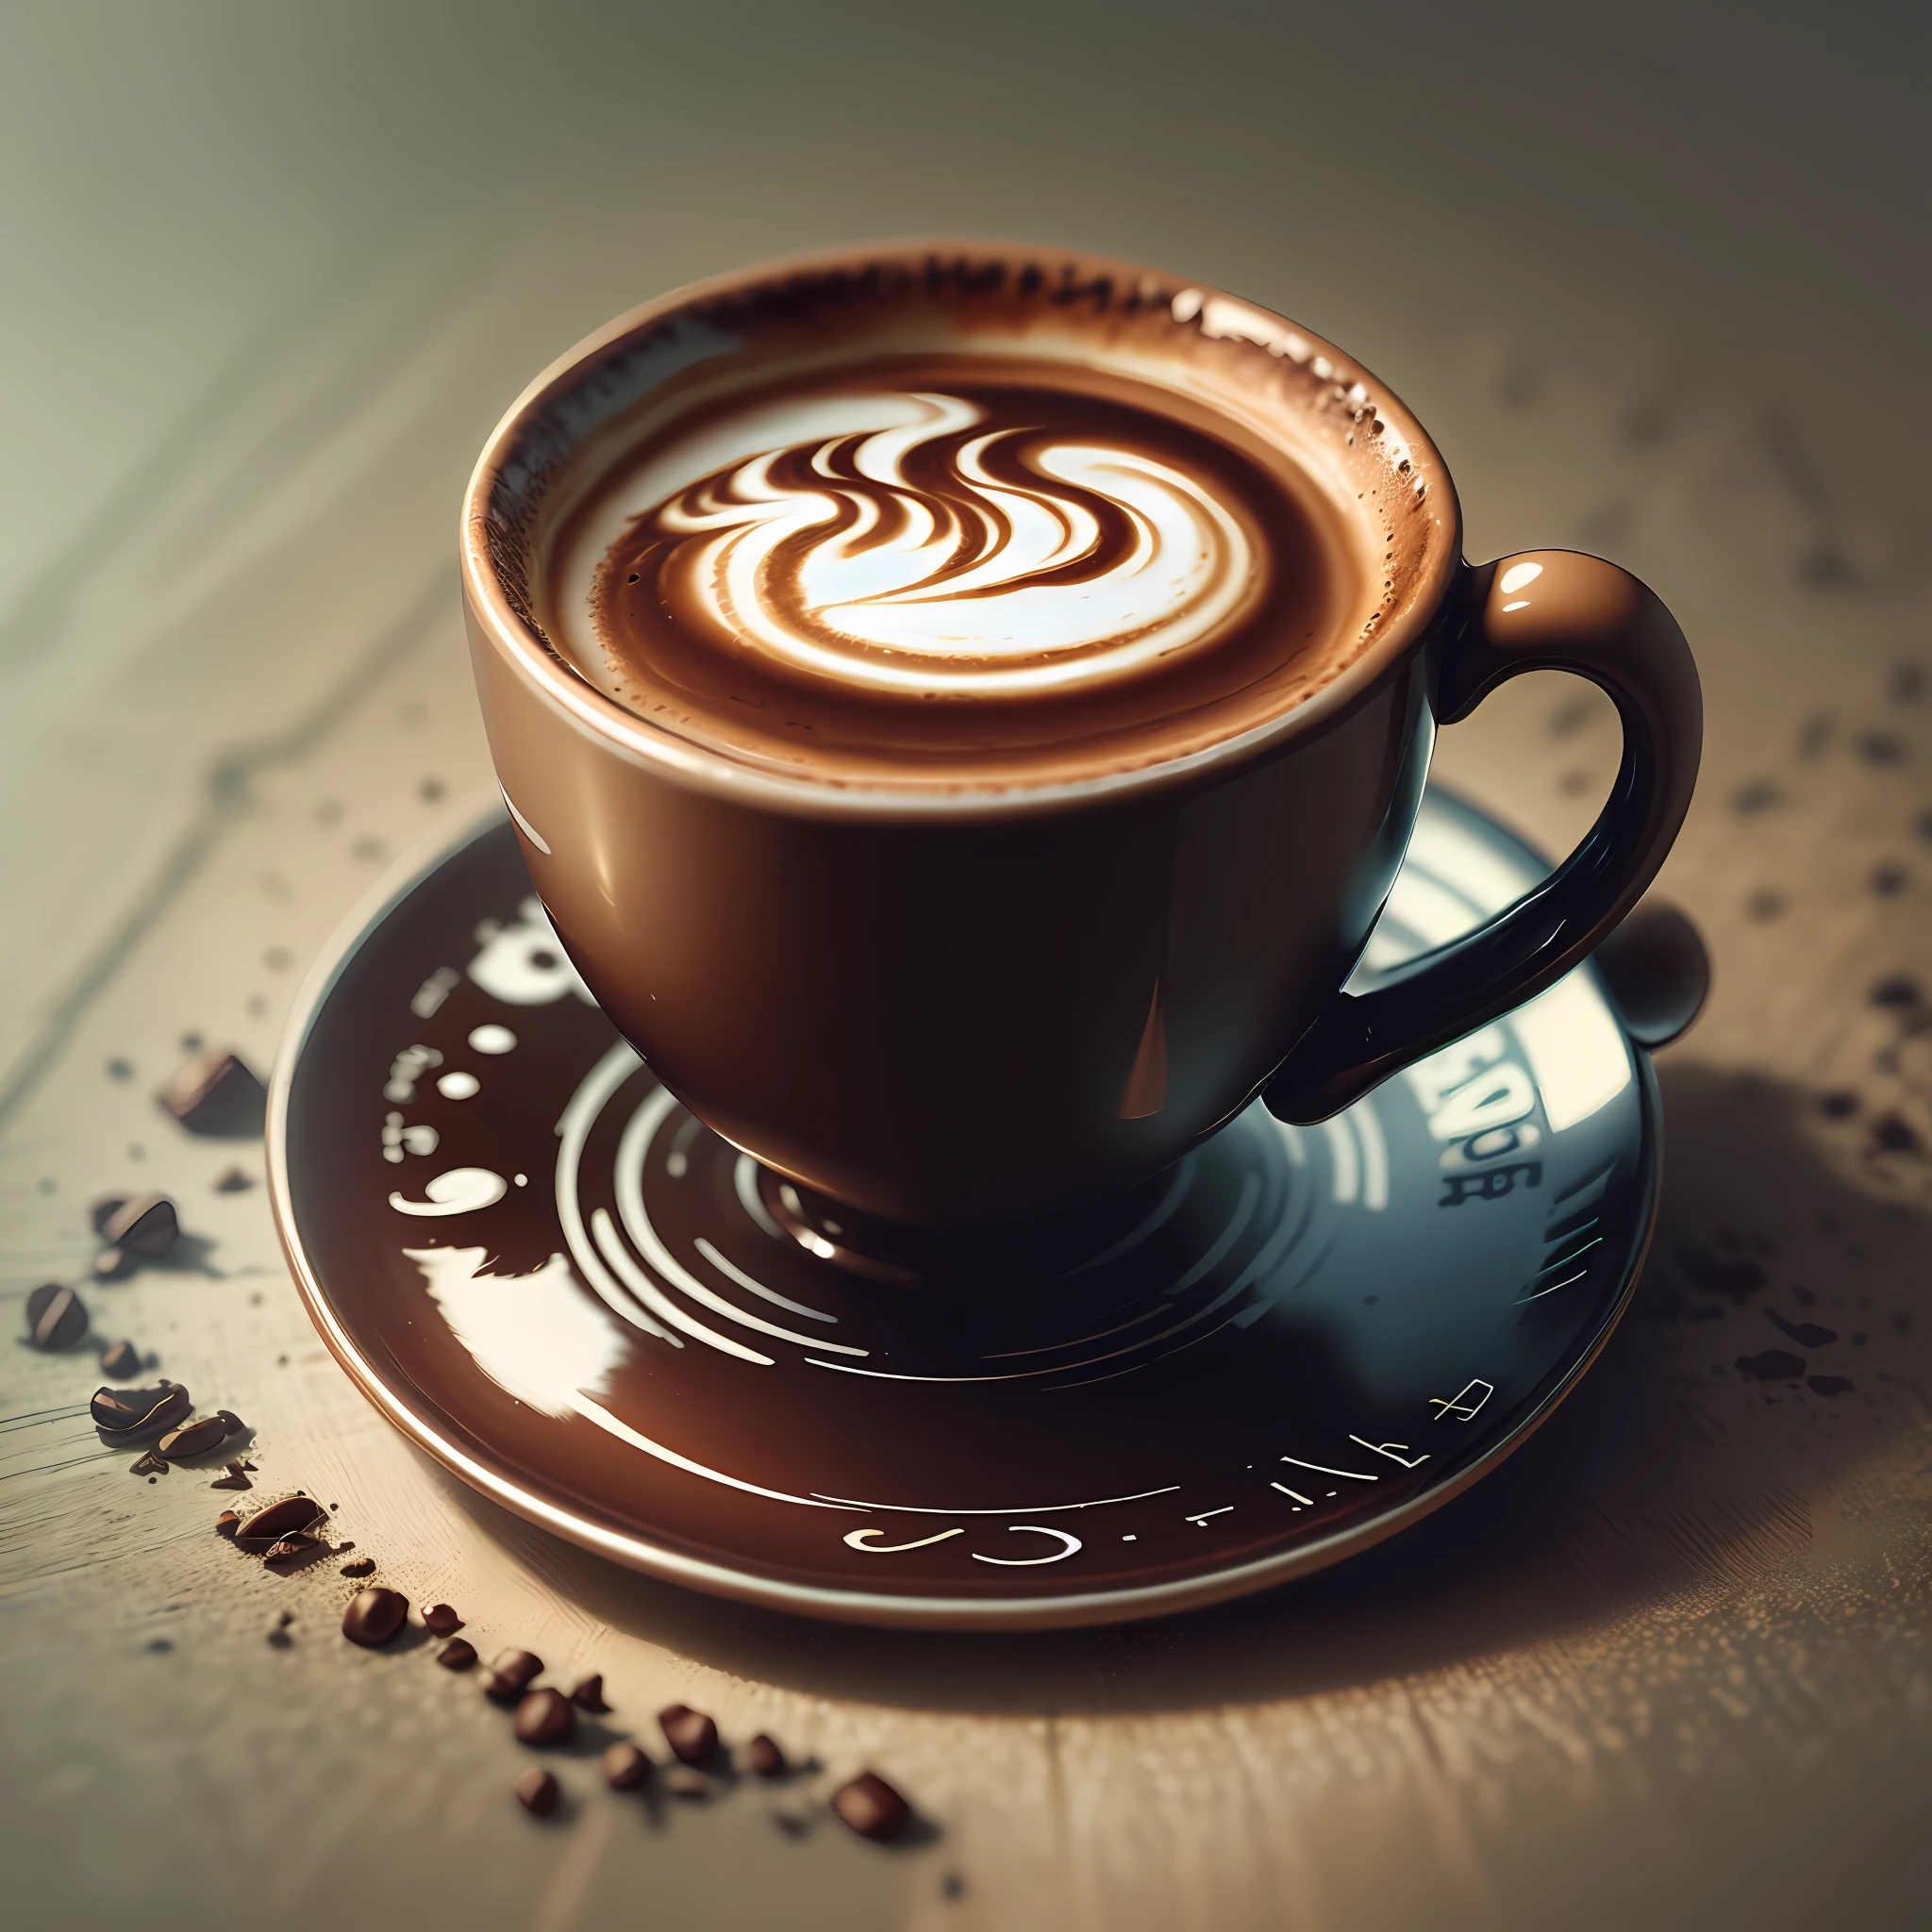 Crea un logotipo escrito profesional ('Acuerdo de café') en forma de taza con el mango